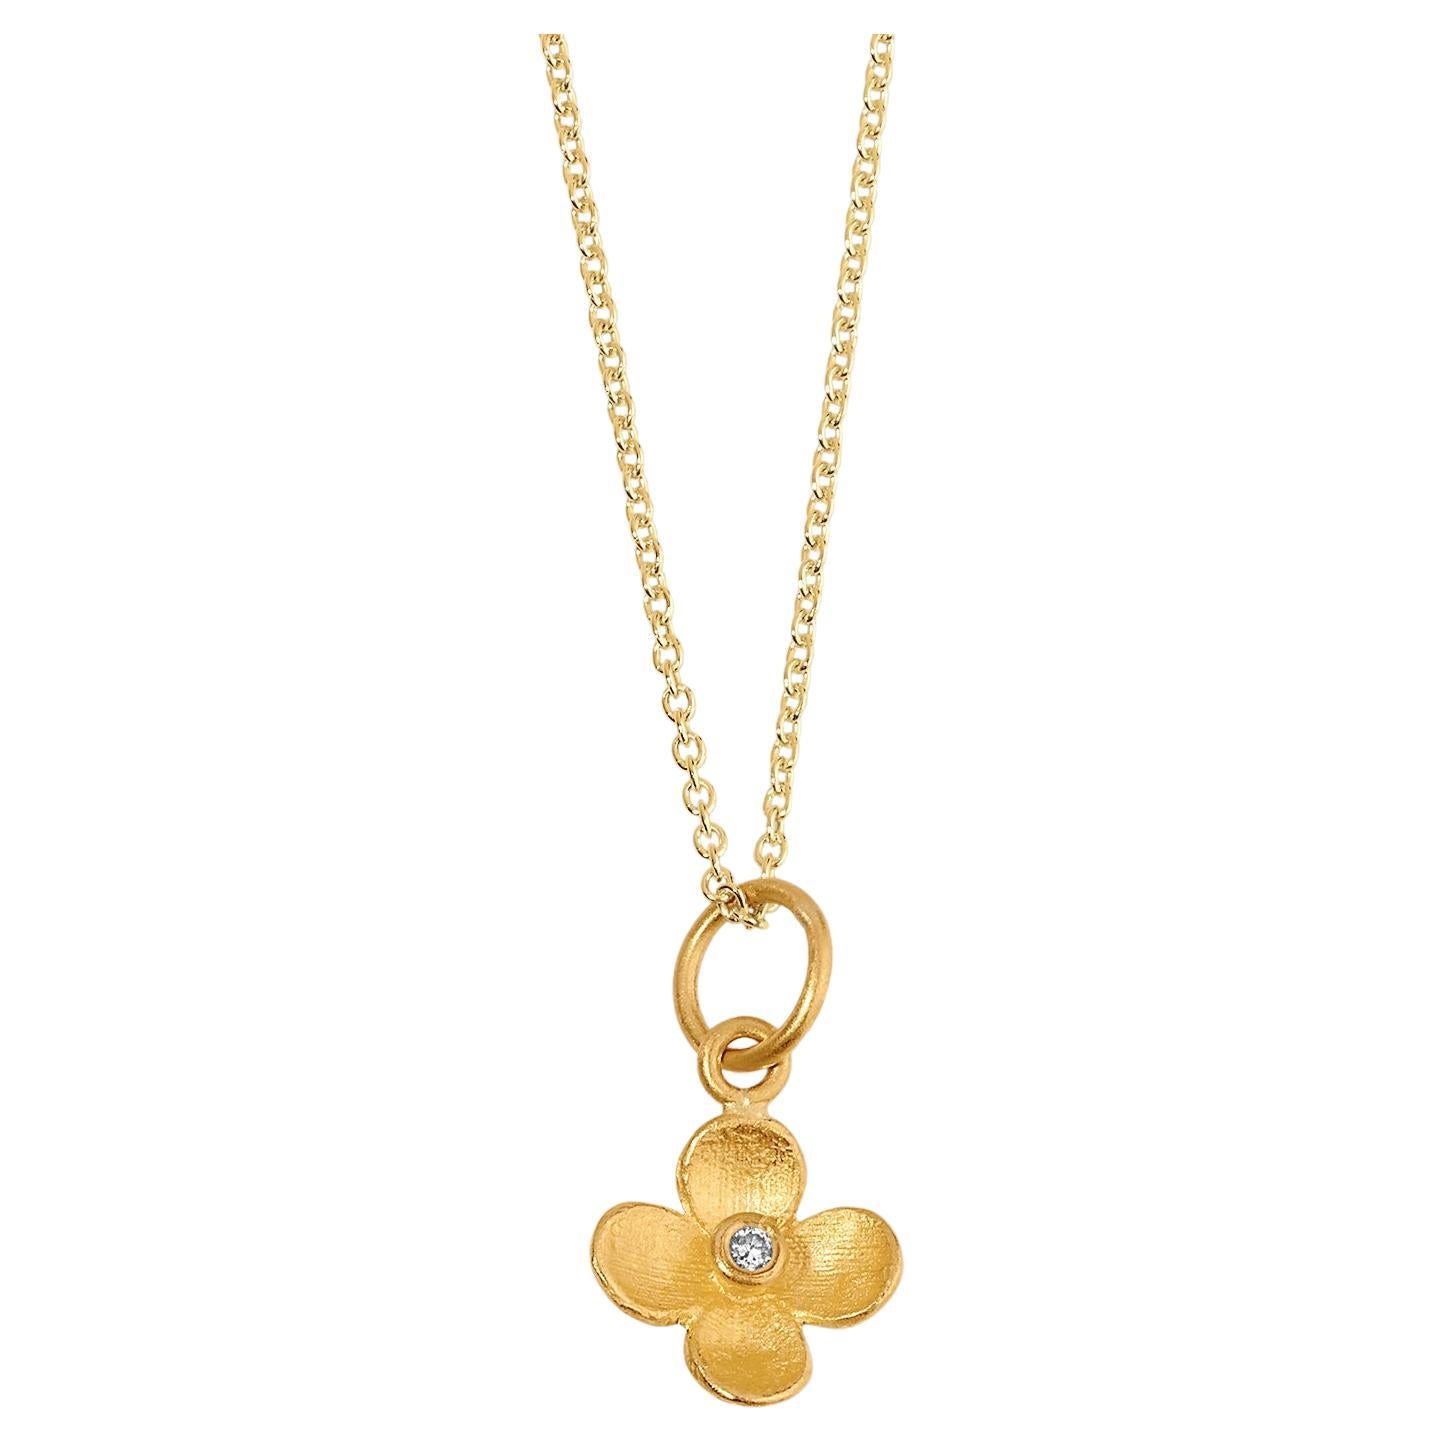 Miniature Four-Petal Flower Charm Pendant Necklace with Center Diamond 24kt Gold For Sale